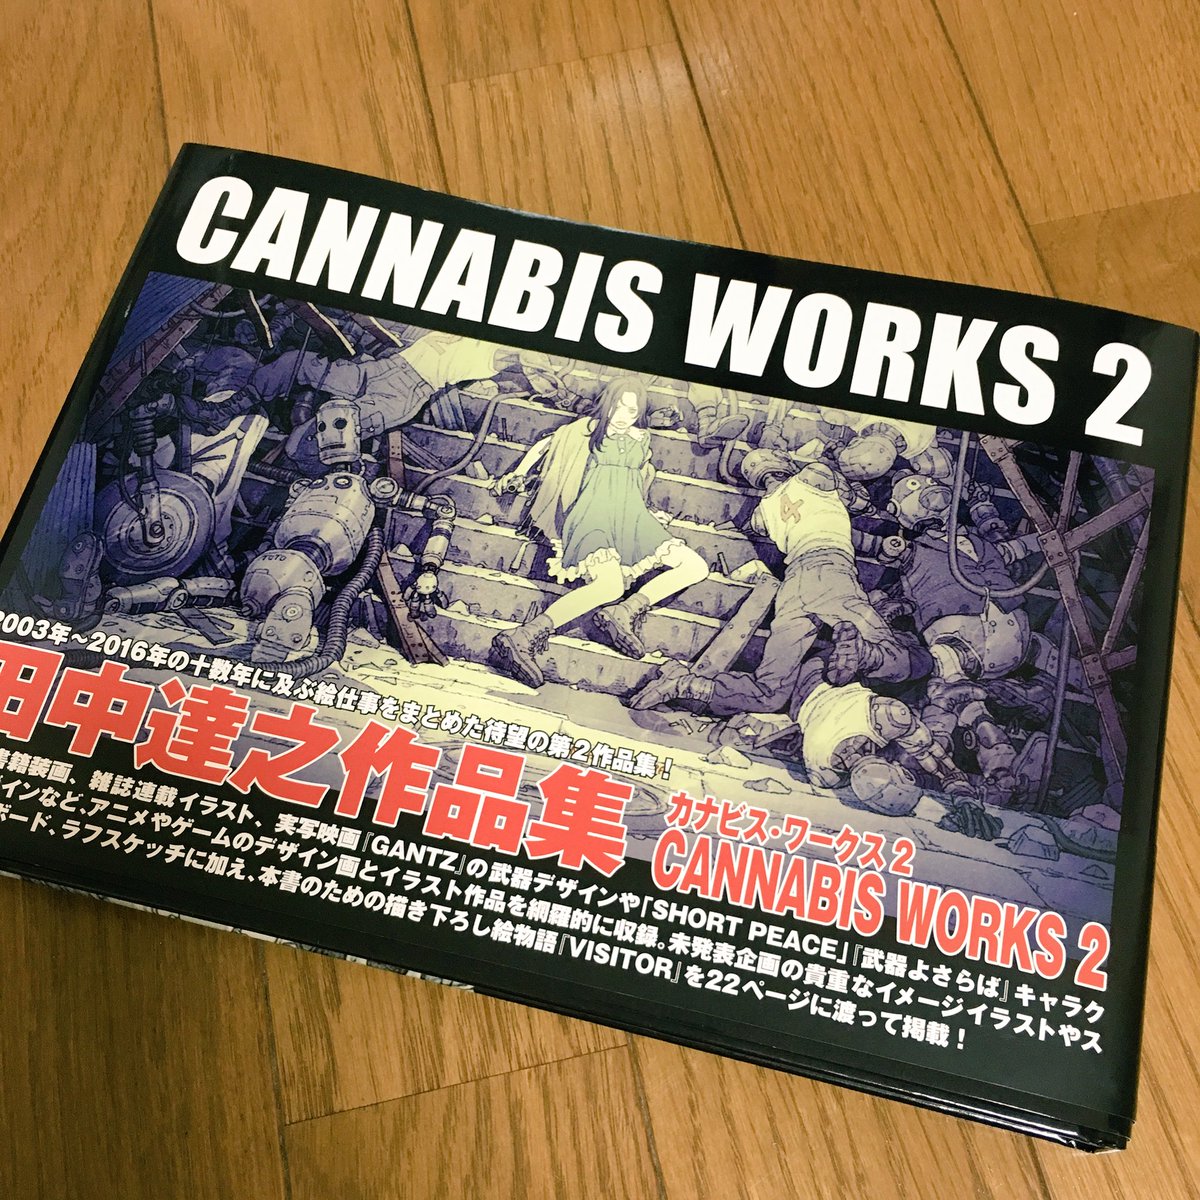 ソメさん カナビスワークス2を手に入れた 相変わらず田中達之先生のイラストは素晴らしい リンダキューブの新作とかうっかり出ないかなぁ